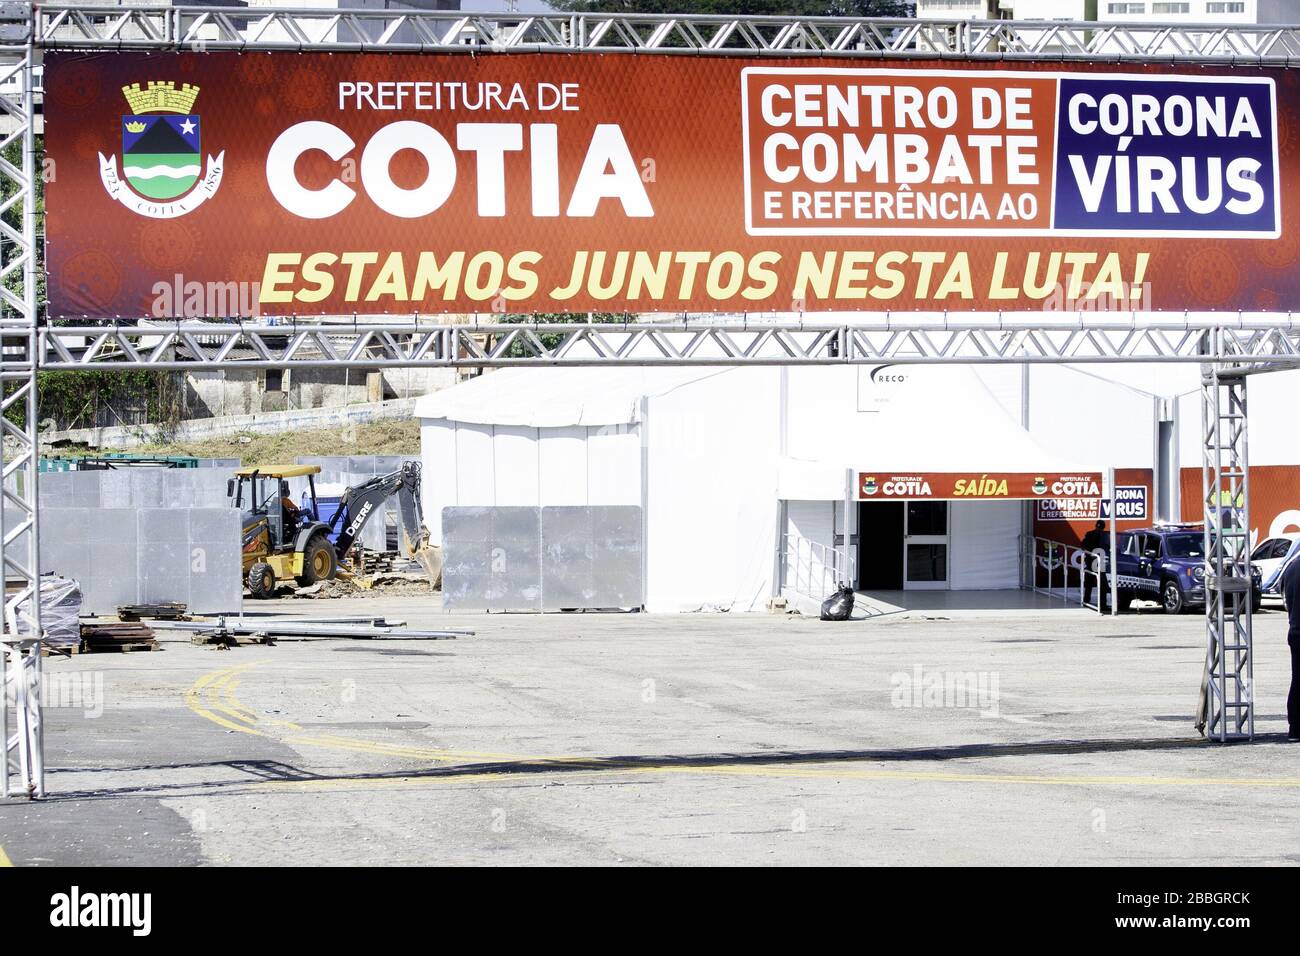 Cotia, Sao Paulo, Brasilien. März 2020. (INT) COVID-19: Krankenhaus in Cotia, Sao Paulo. Die Stadt Cotia ist noch im Bau für die Lieferung des Krankenhauses, das für diesen Mittwoch, den 01/04, geplant ist. Die Stadt Cotia hat mehr als 249 Tausend Einwohner und aufgrund der COVID-19-Pandemie beantragte Bürgermeister Rogerio Franco mit rechtlichen Mitteln die Übernahme von 35 Atemschutzmasken für das Coronavirus Combat Center.Credit:Leco Viana/Thenews2 Credit: Leco Viana/TheNEWS2/ZUMA Wire/Alamy Live News Stockfoto